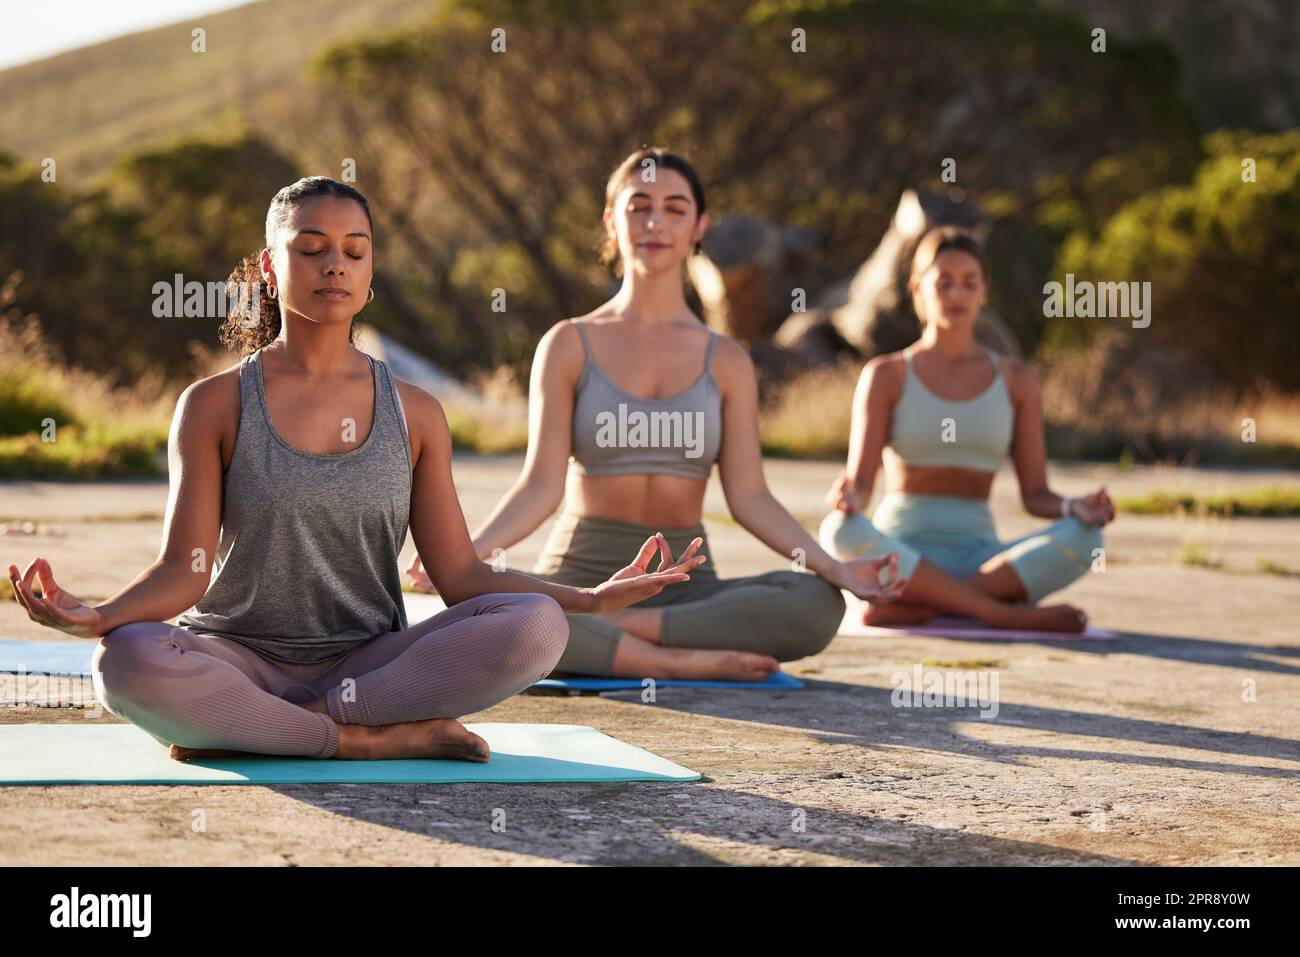 Lange Yoga-Frauen meditieren mit gekreuzten Beinen für Outdoor-Übungen in abgelegener Natur. Vielfältige Gruppe von aufmerksamen, aktiven Freunden, die psychische Gesundheit verbinden und ausbalancieren. Junge, fokussierte, ruhige Zen-Leute Stockfoto